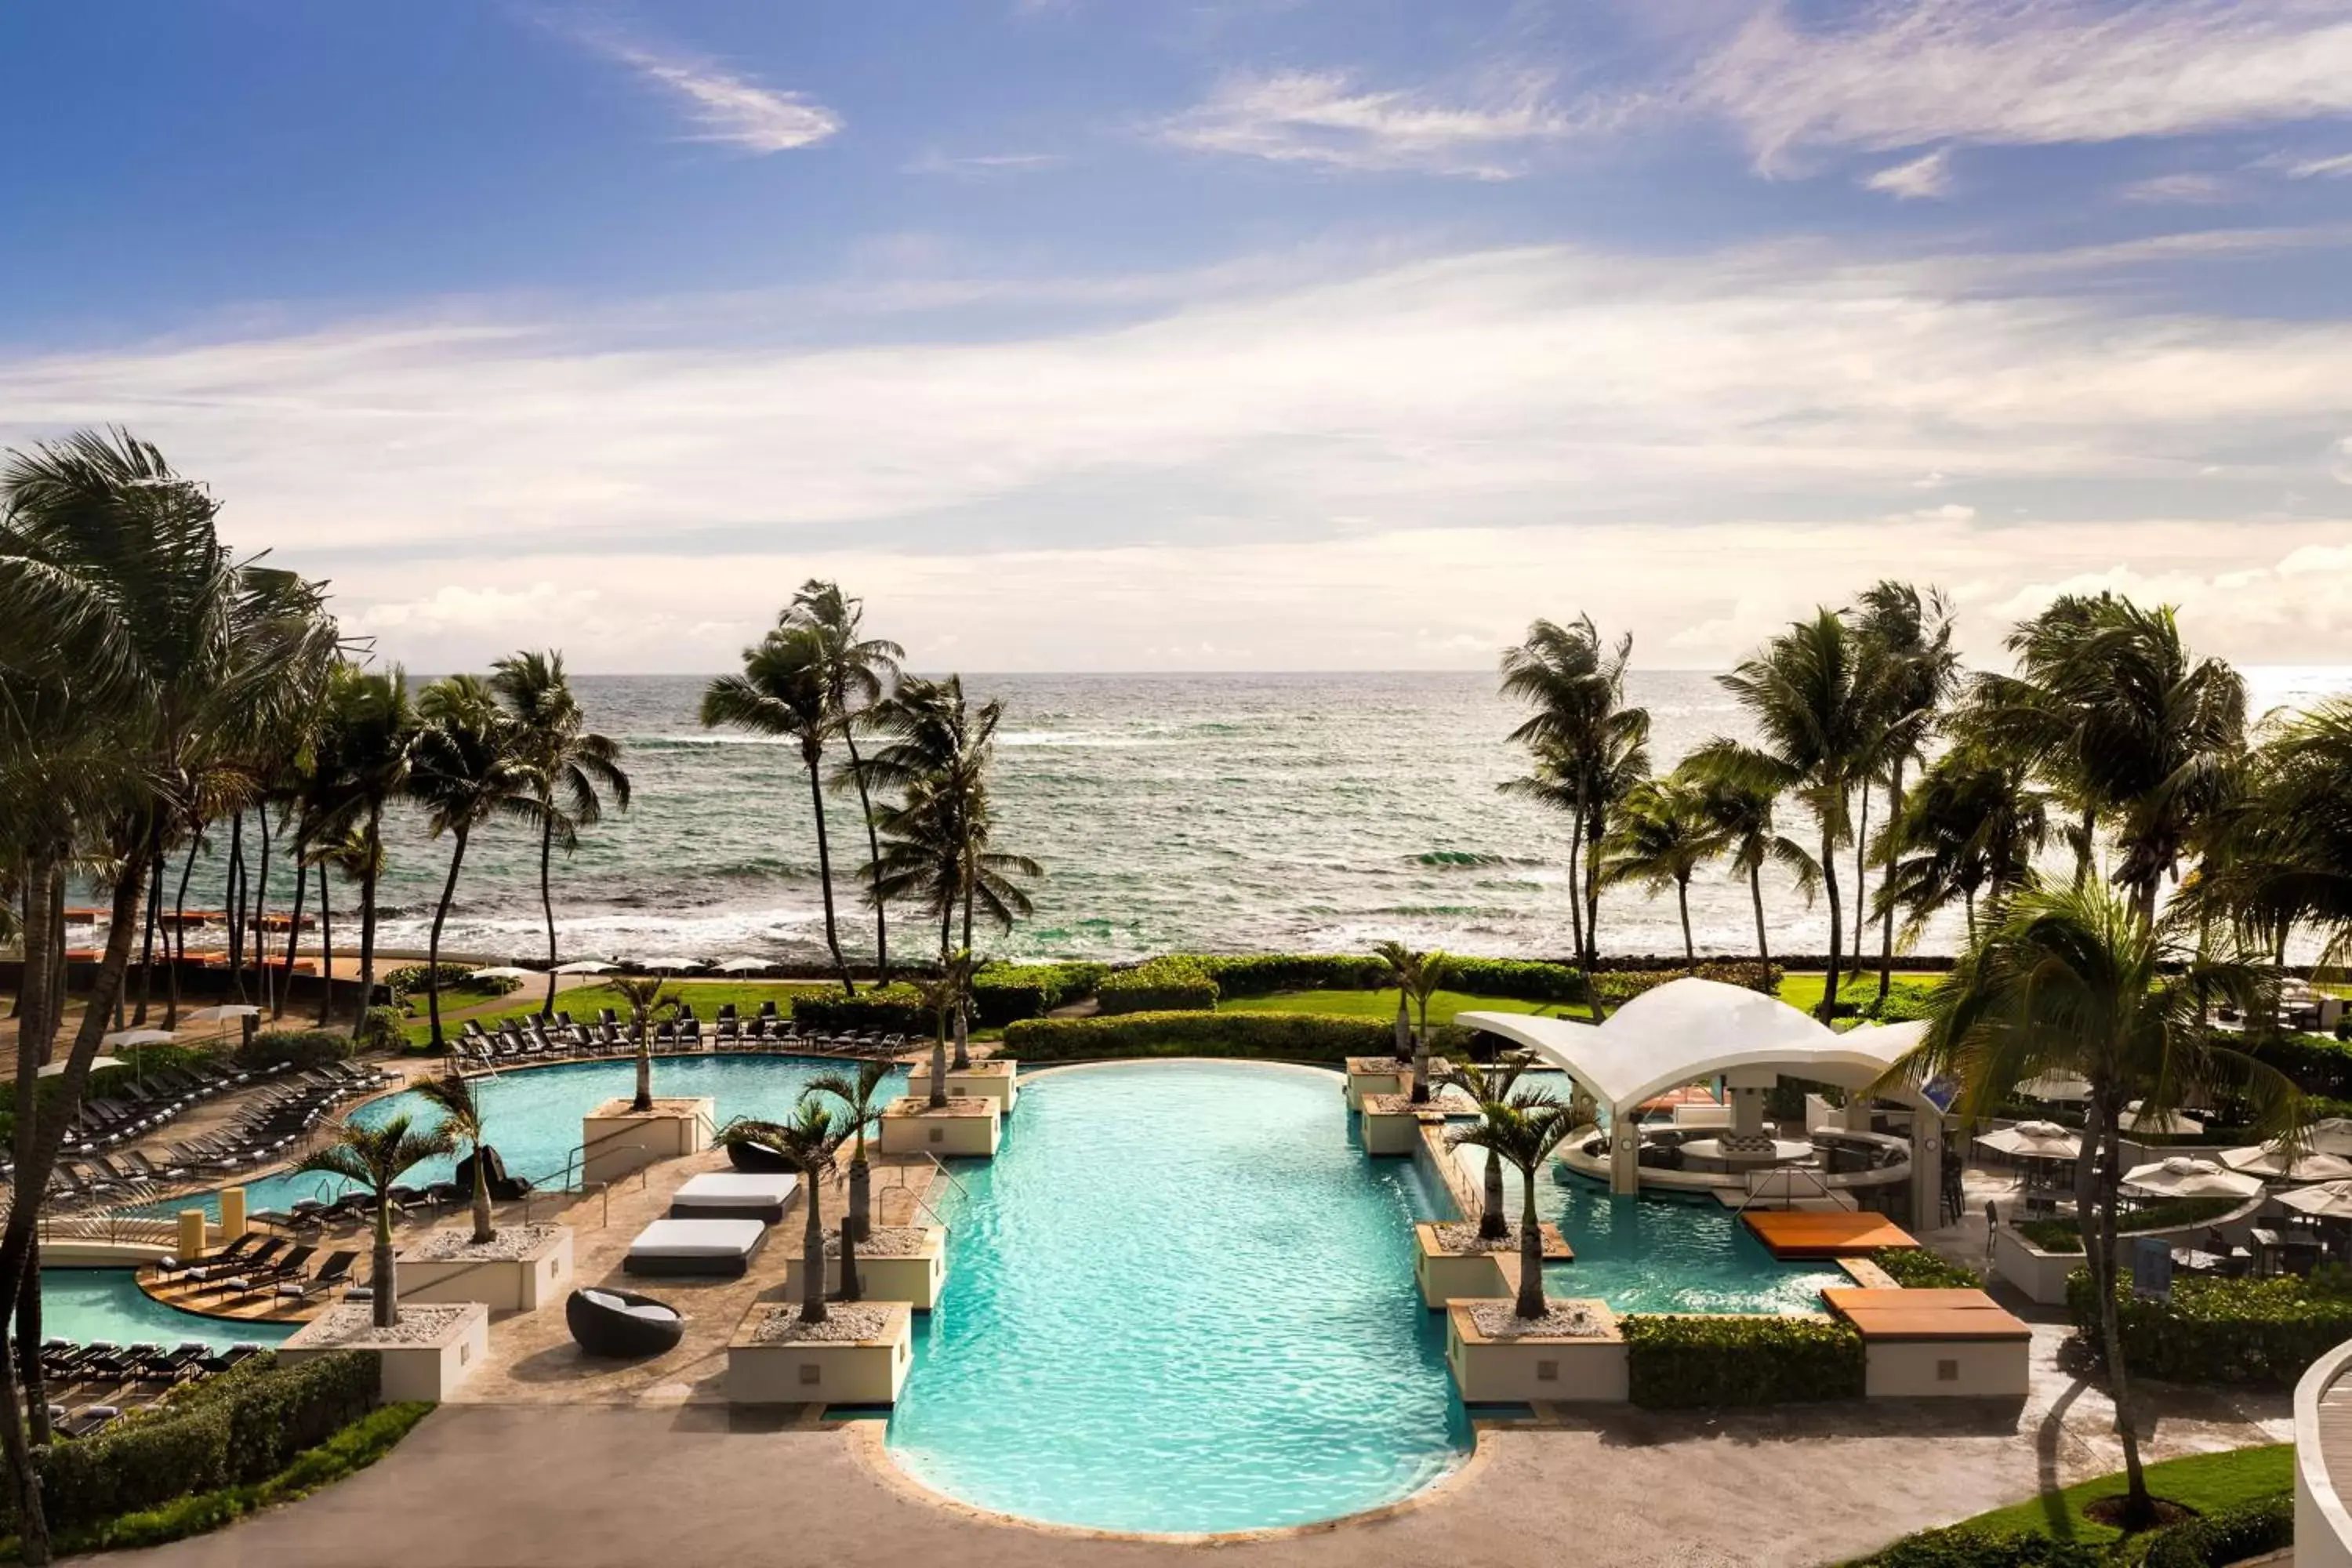 Pool view, Swimming Pool in Caribe Hilton